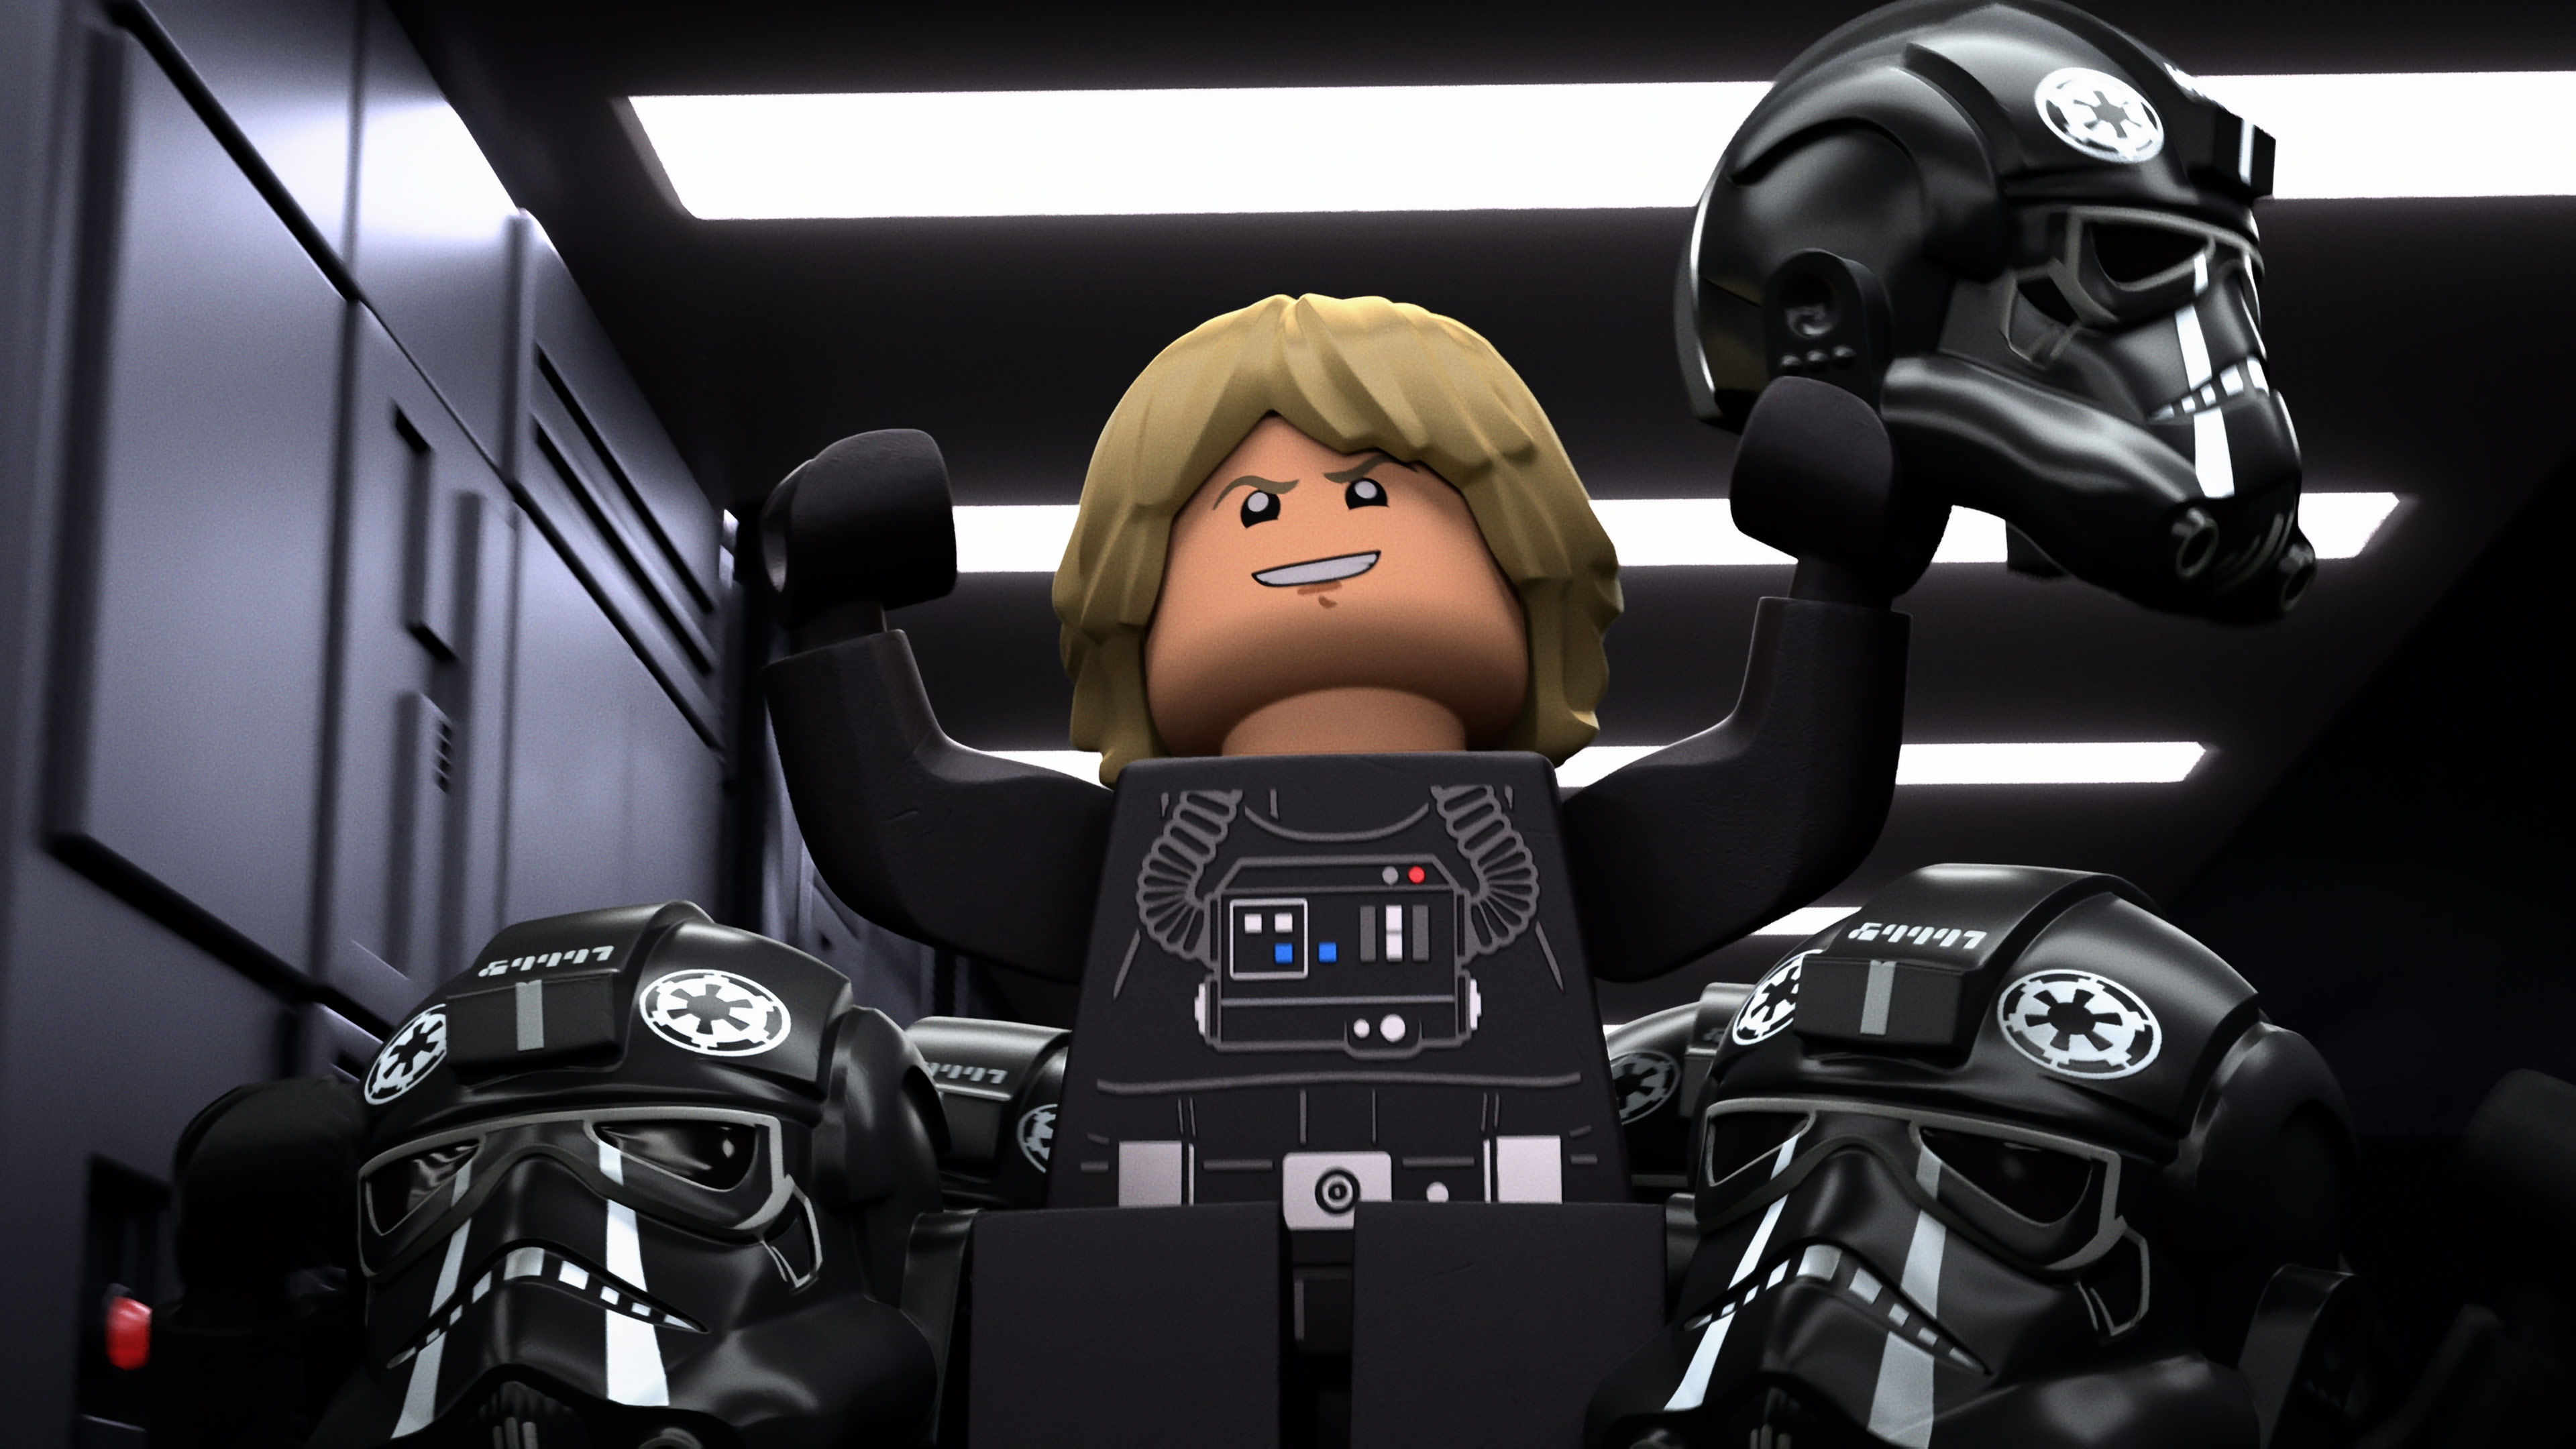 Descargar fondos de escritorio de Lego Star Wars: Cuentos Escalofriantes HD